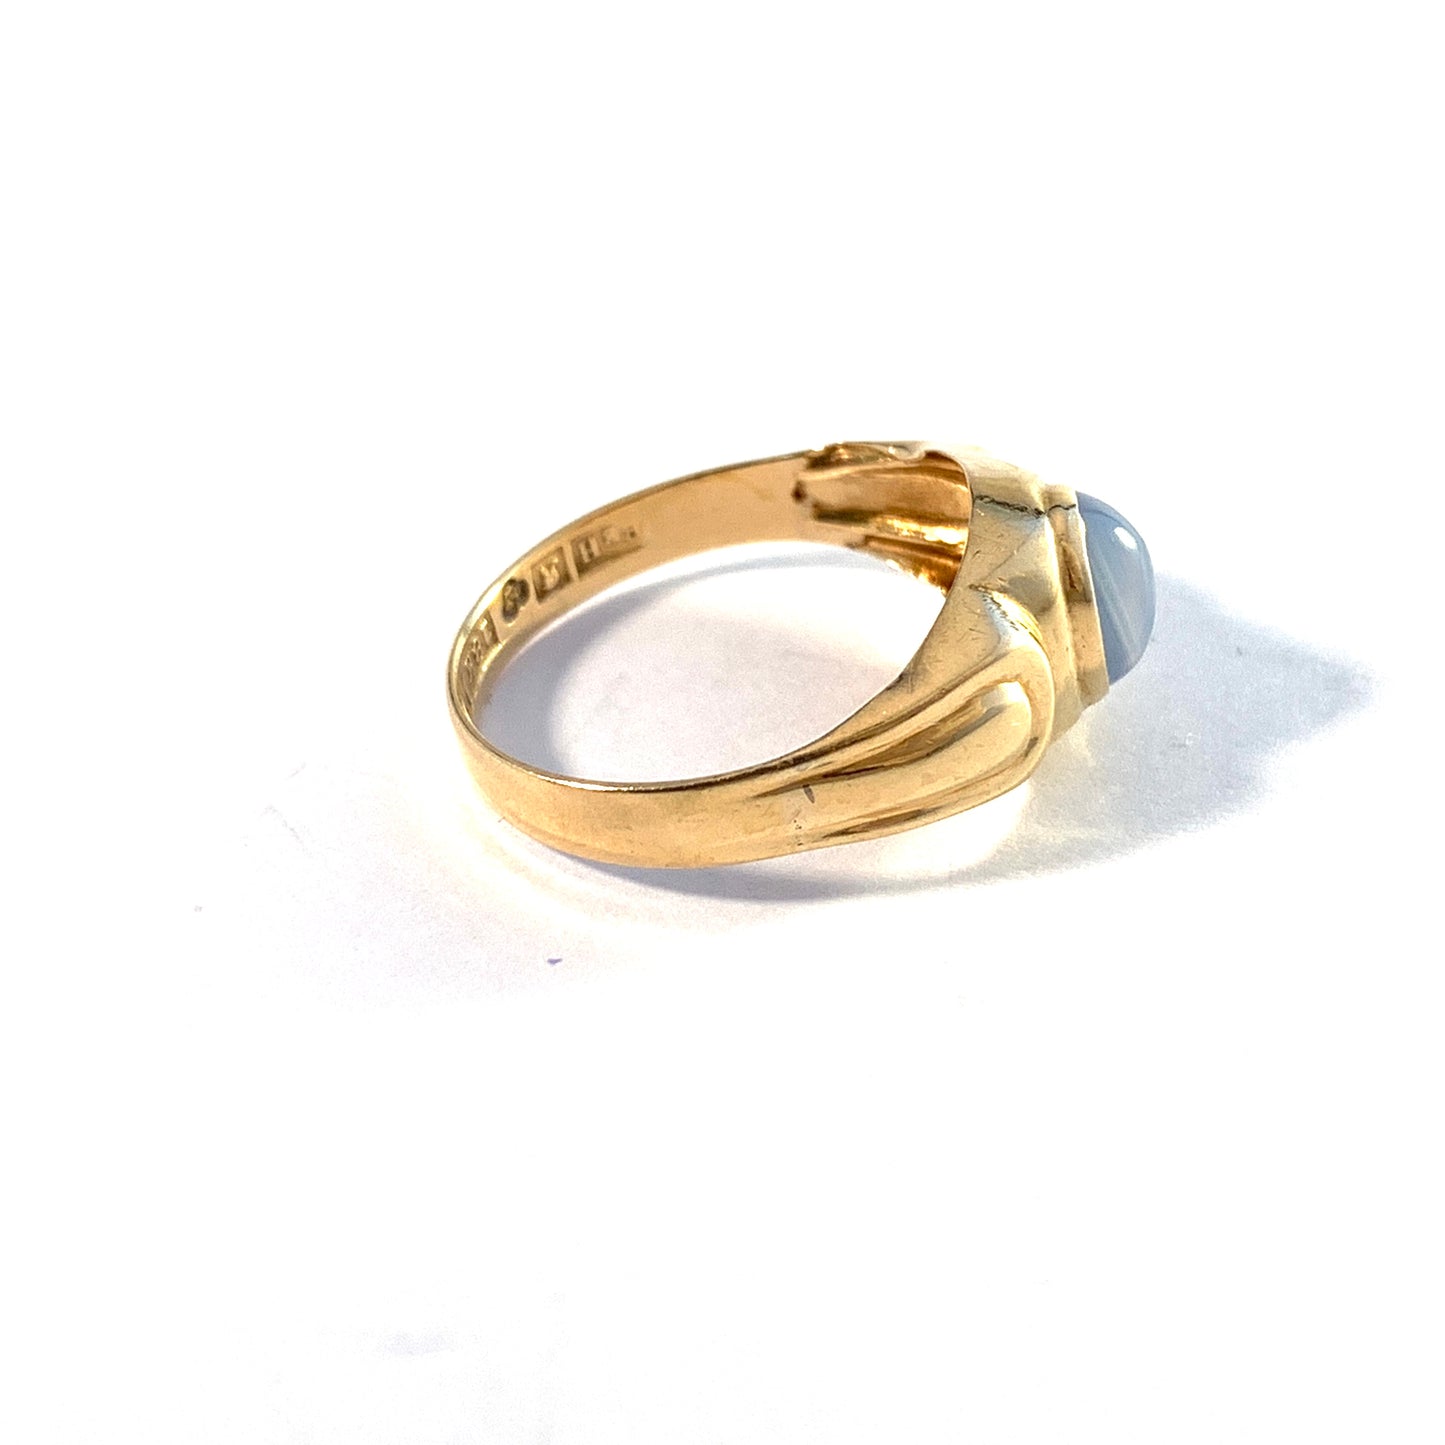 Bengt Hallberg, Sweden 1963. Vintage 18k Gold Chalcedony Ring.